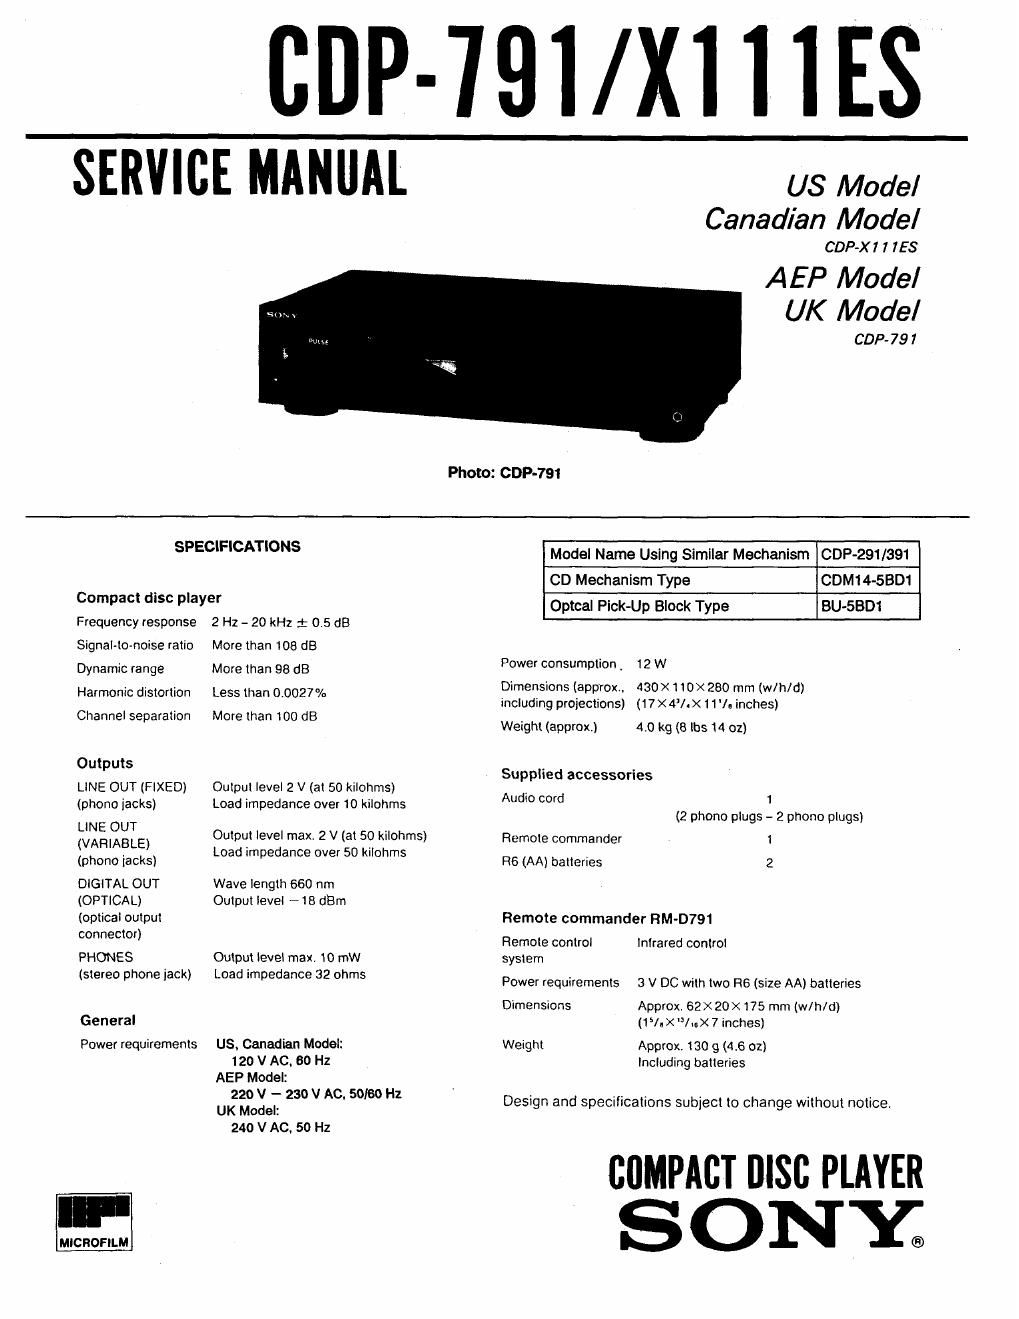 sony cdp 791 service manual